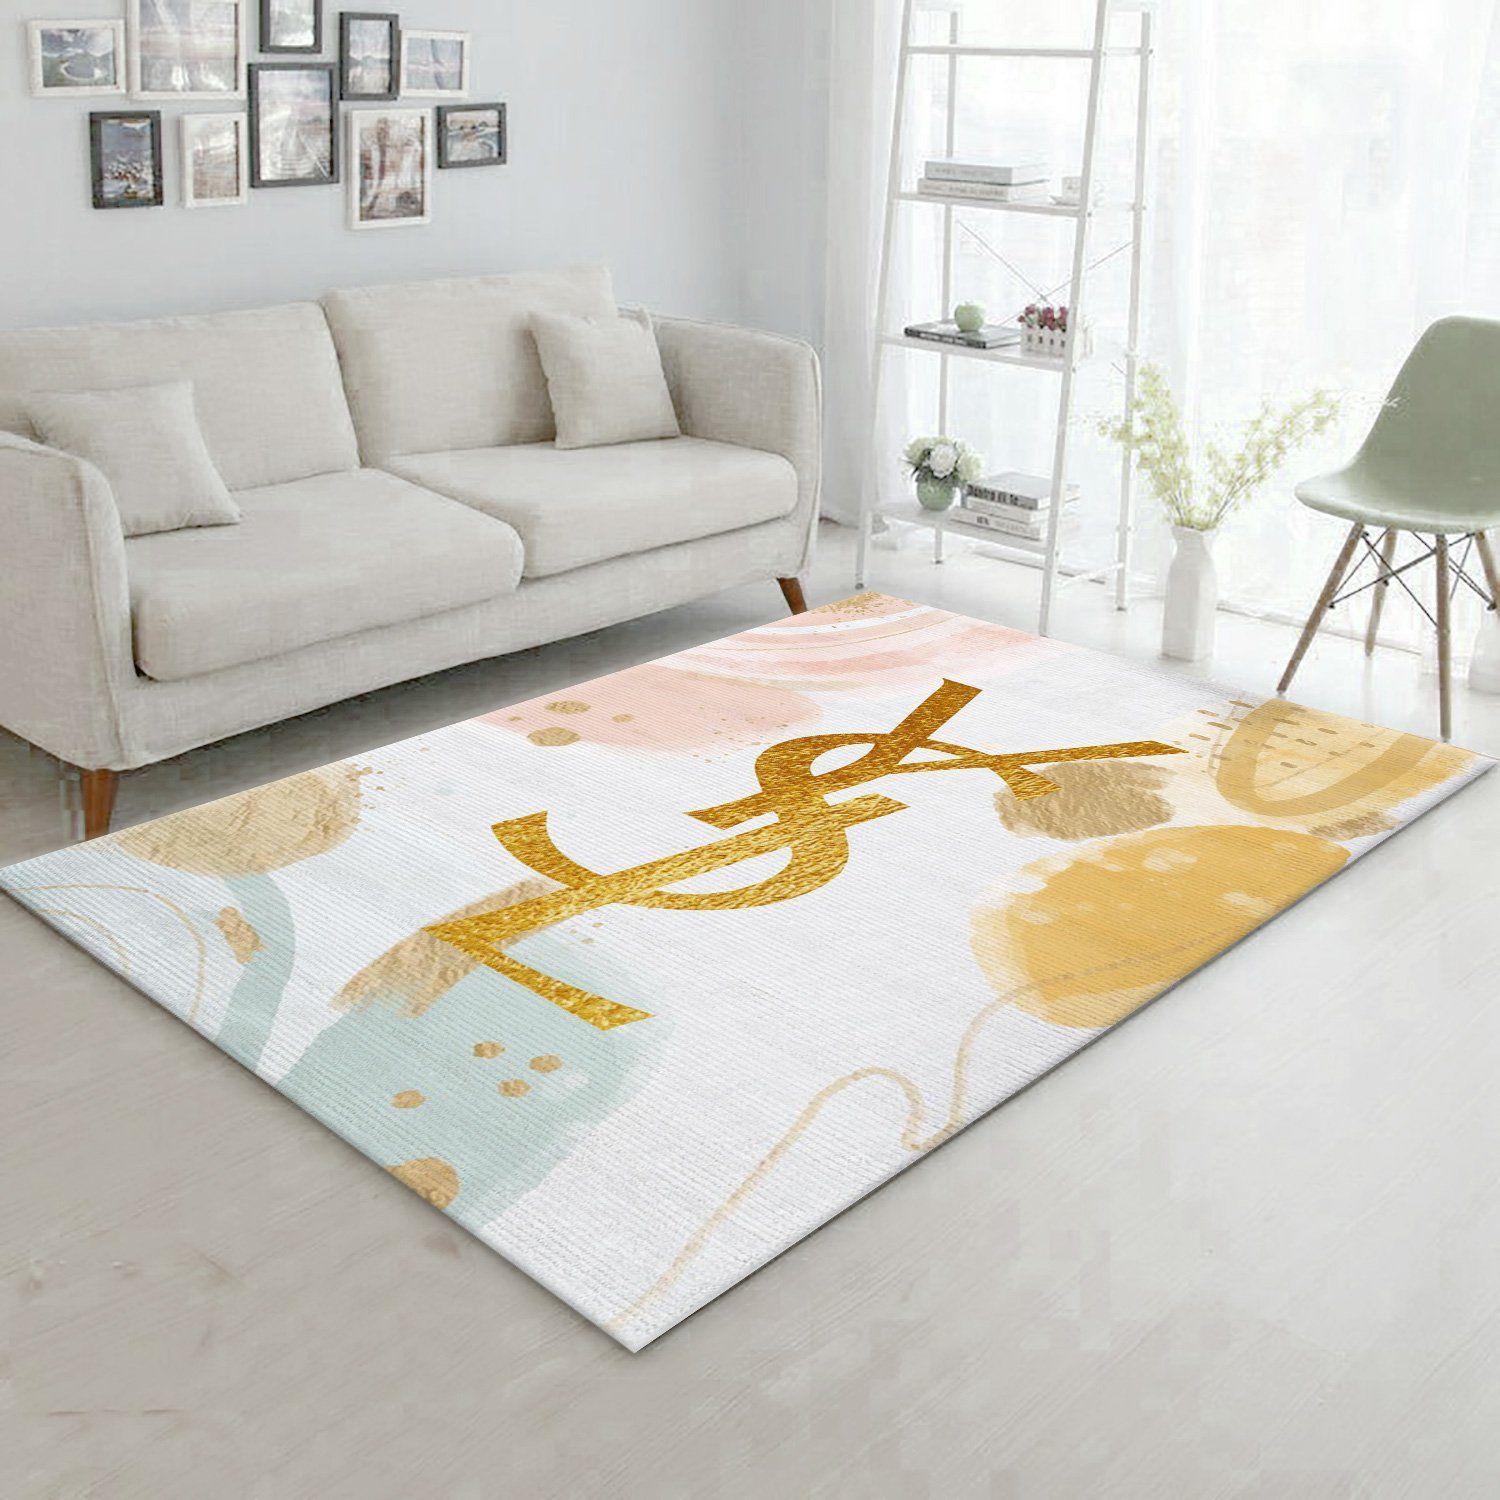 Ysl Yves Saint Lauren Rectangle Rug Bedroom Rug Home Decor Floor Decor - Indoor Outdoor Rugs 2